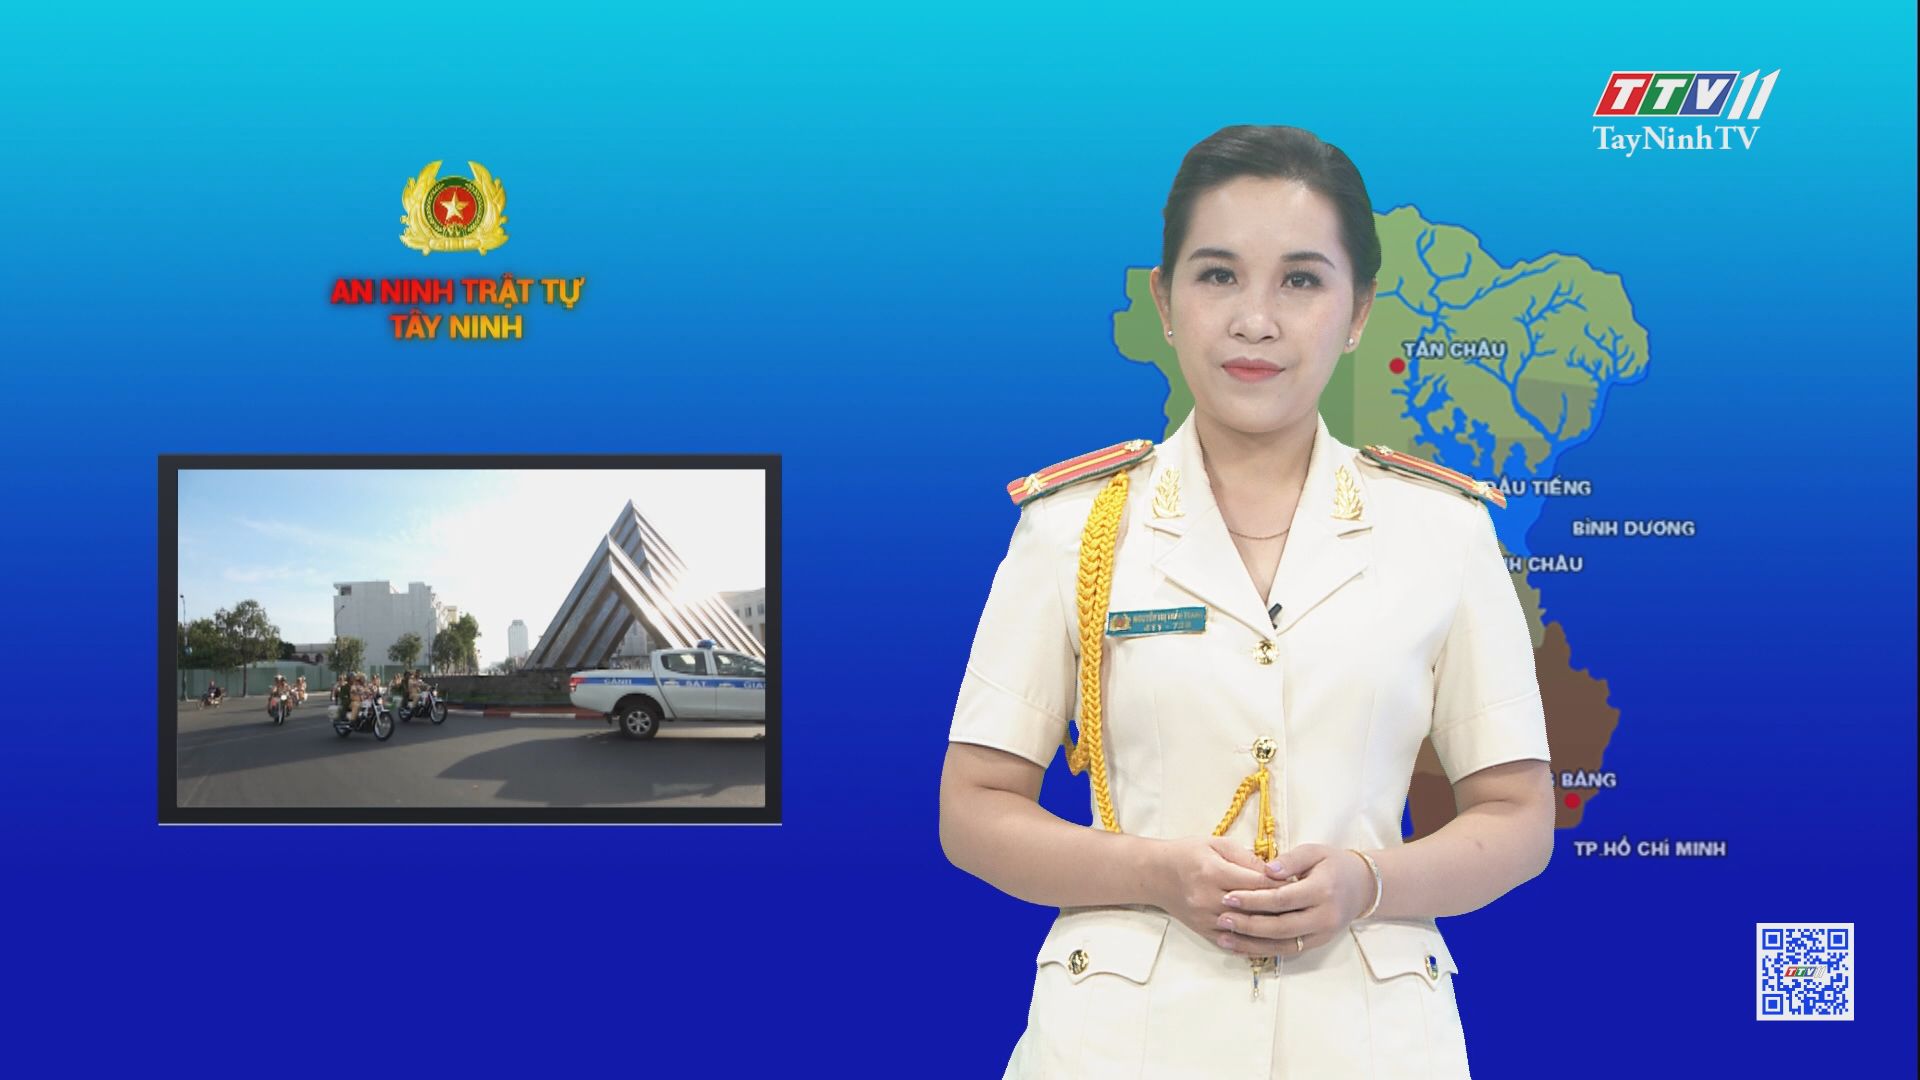 Cảnh sát Cơ động lá chắn vững vàng trong phòng chống tội phạm | AN NINH TRẬT TỰ | TayNinhTV